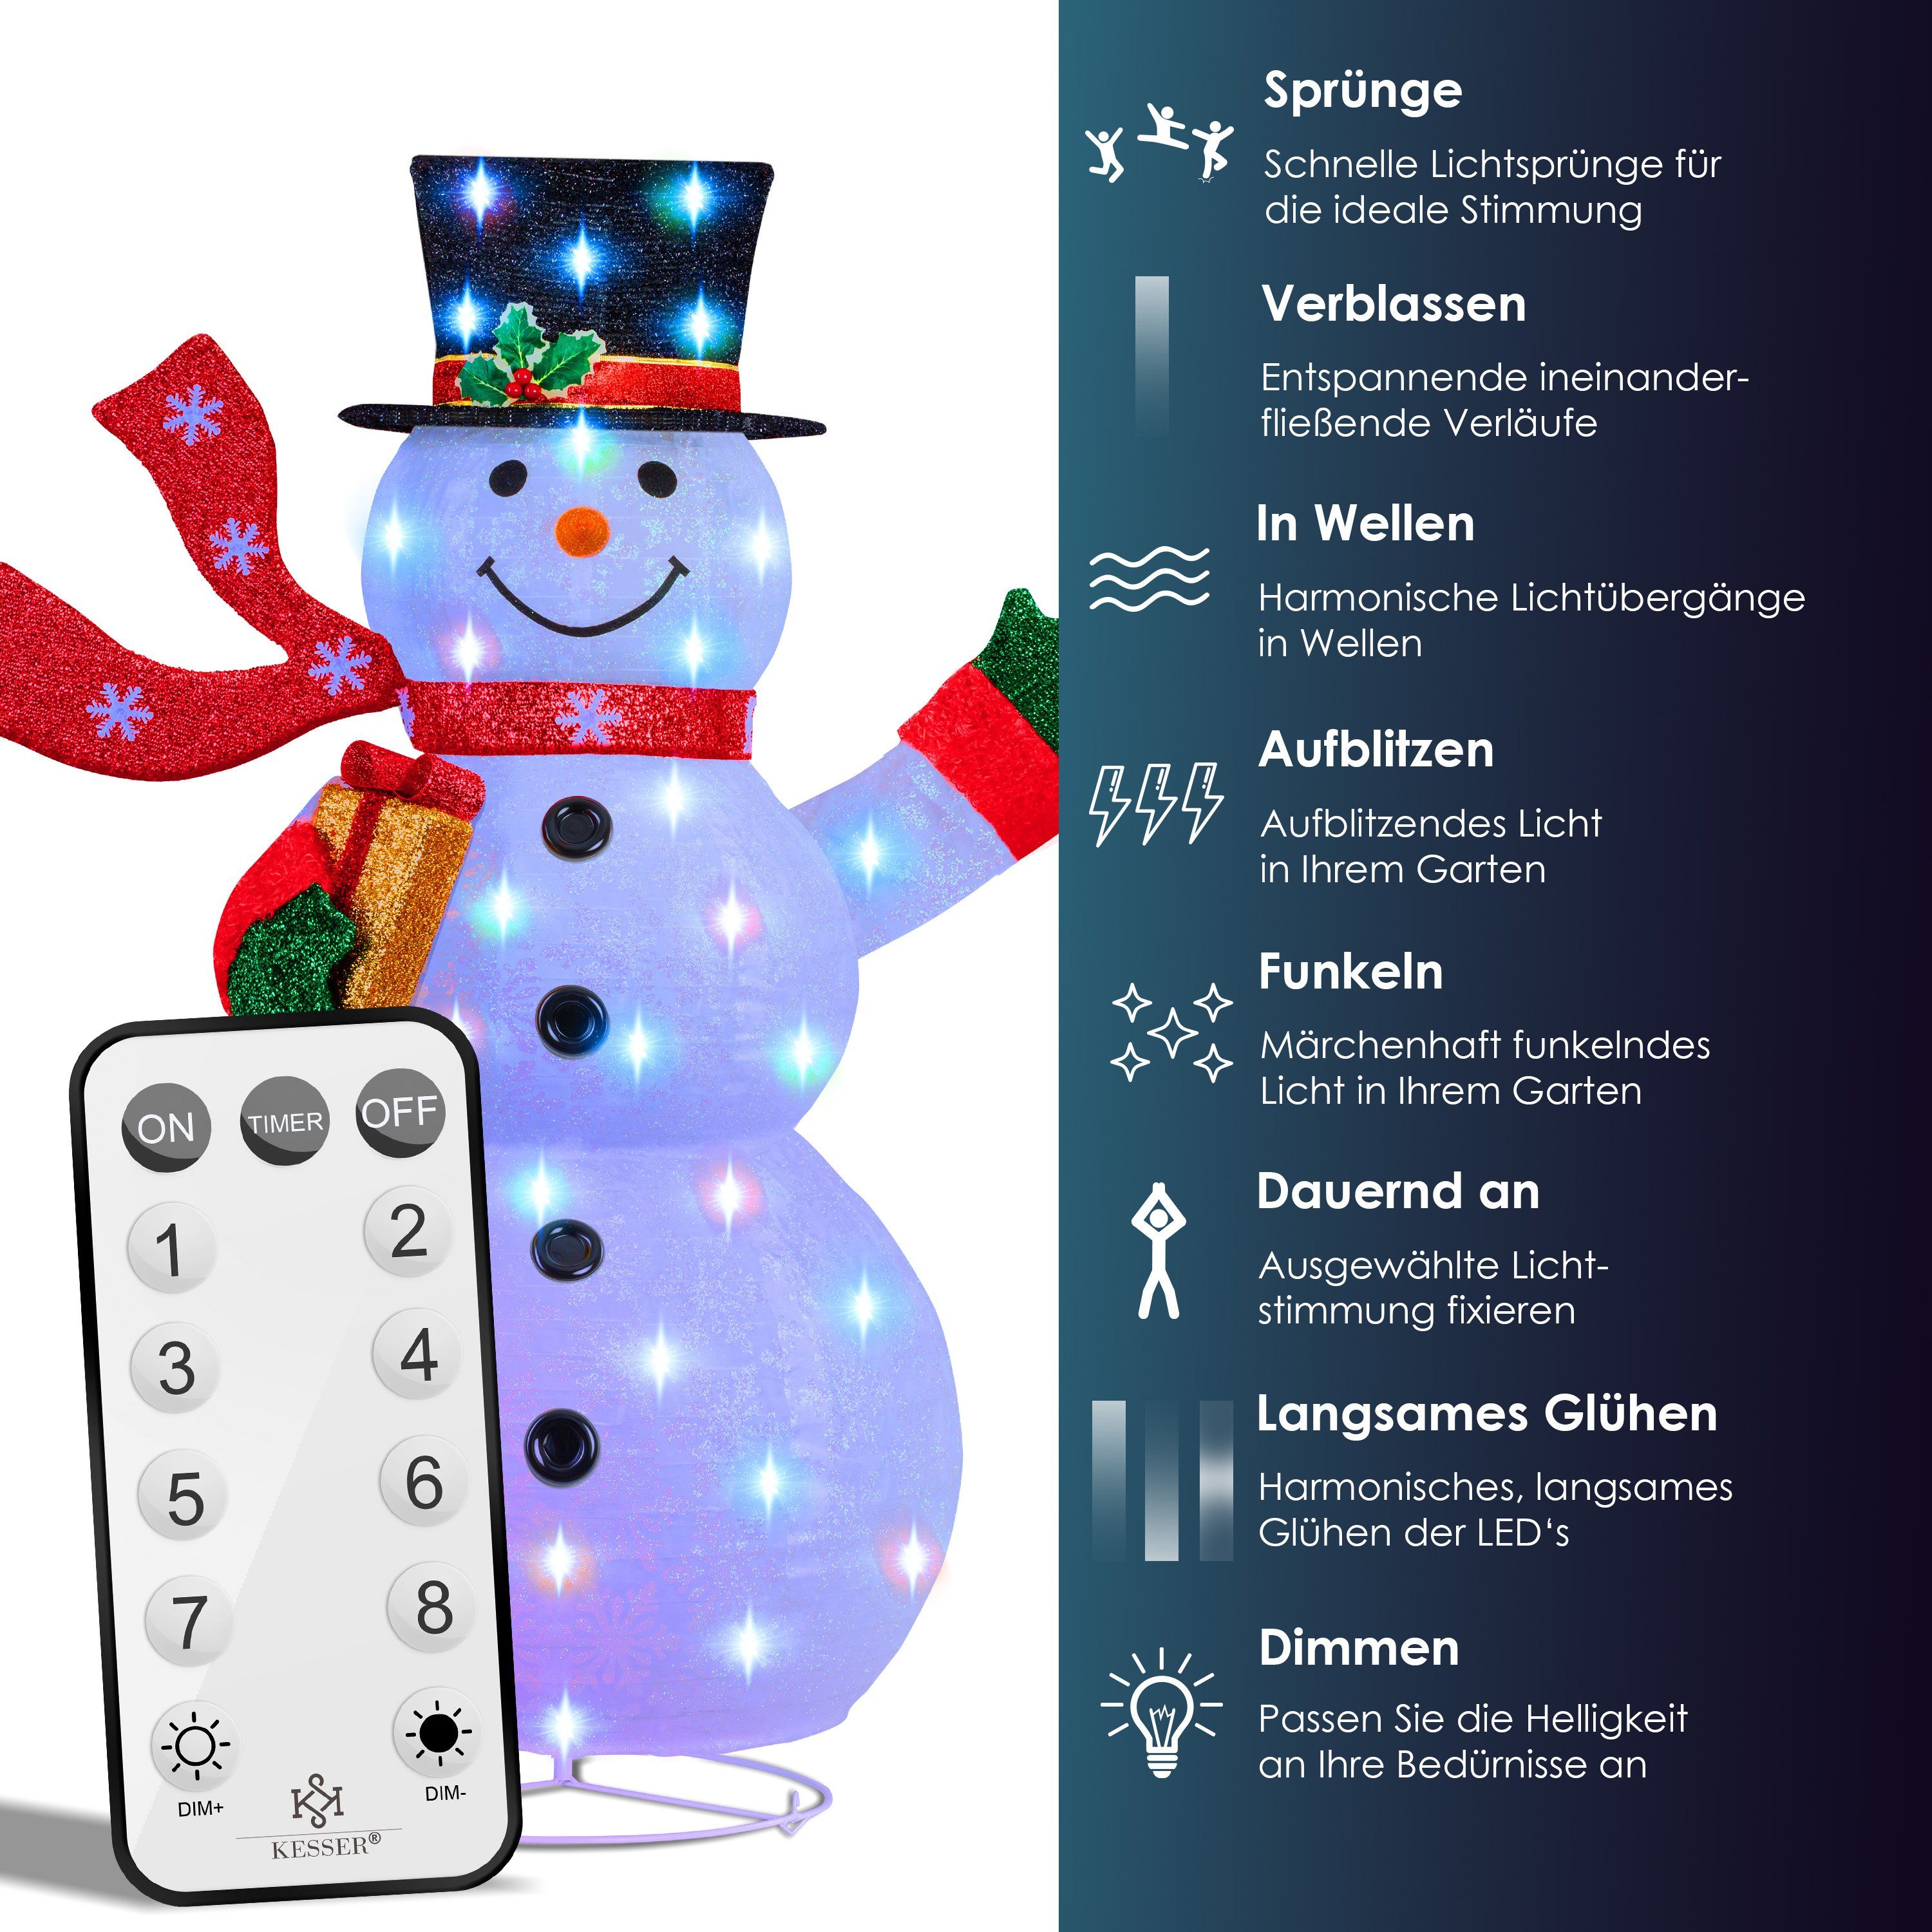 Schneemann Modi Mit KESSER Bunter LED mit Weihnachtsfigur, Farbspiel Fernbedienung